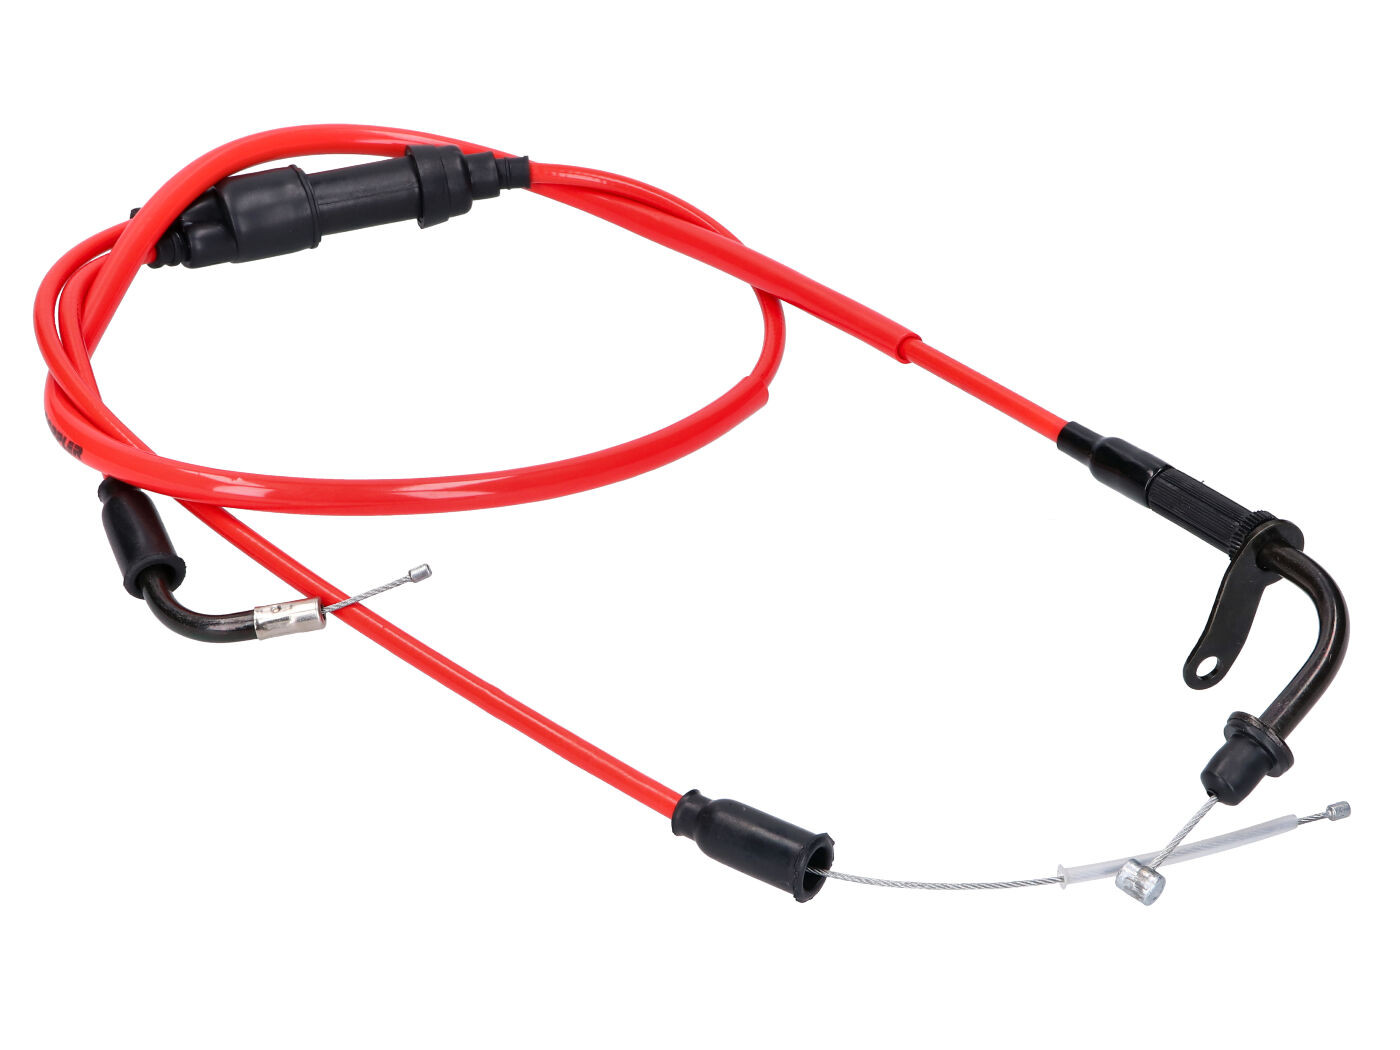 Gázpedál kábel komplett Doppler PTFE piros Rieju MRT, MRX, SMX, RRX, Tango, RS3 modellekhez